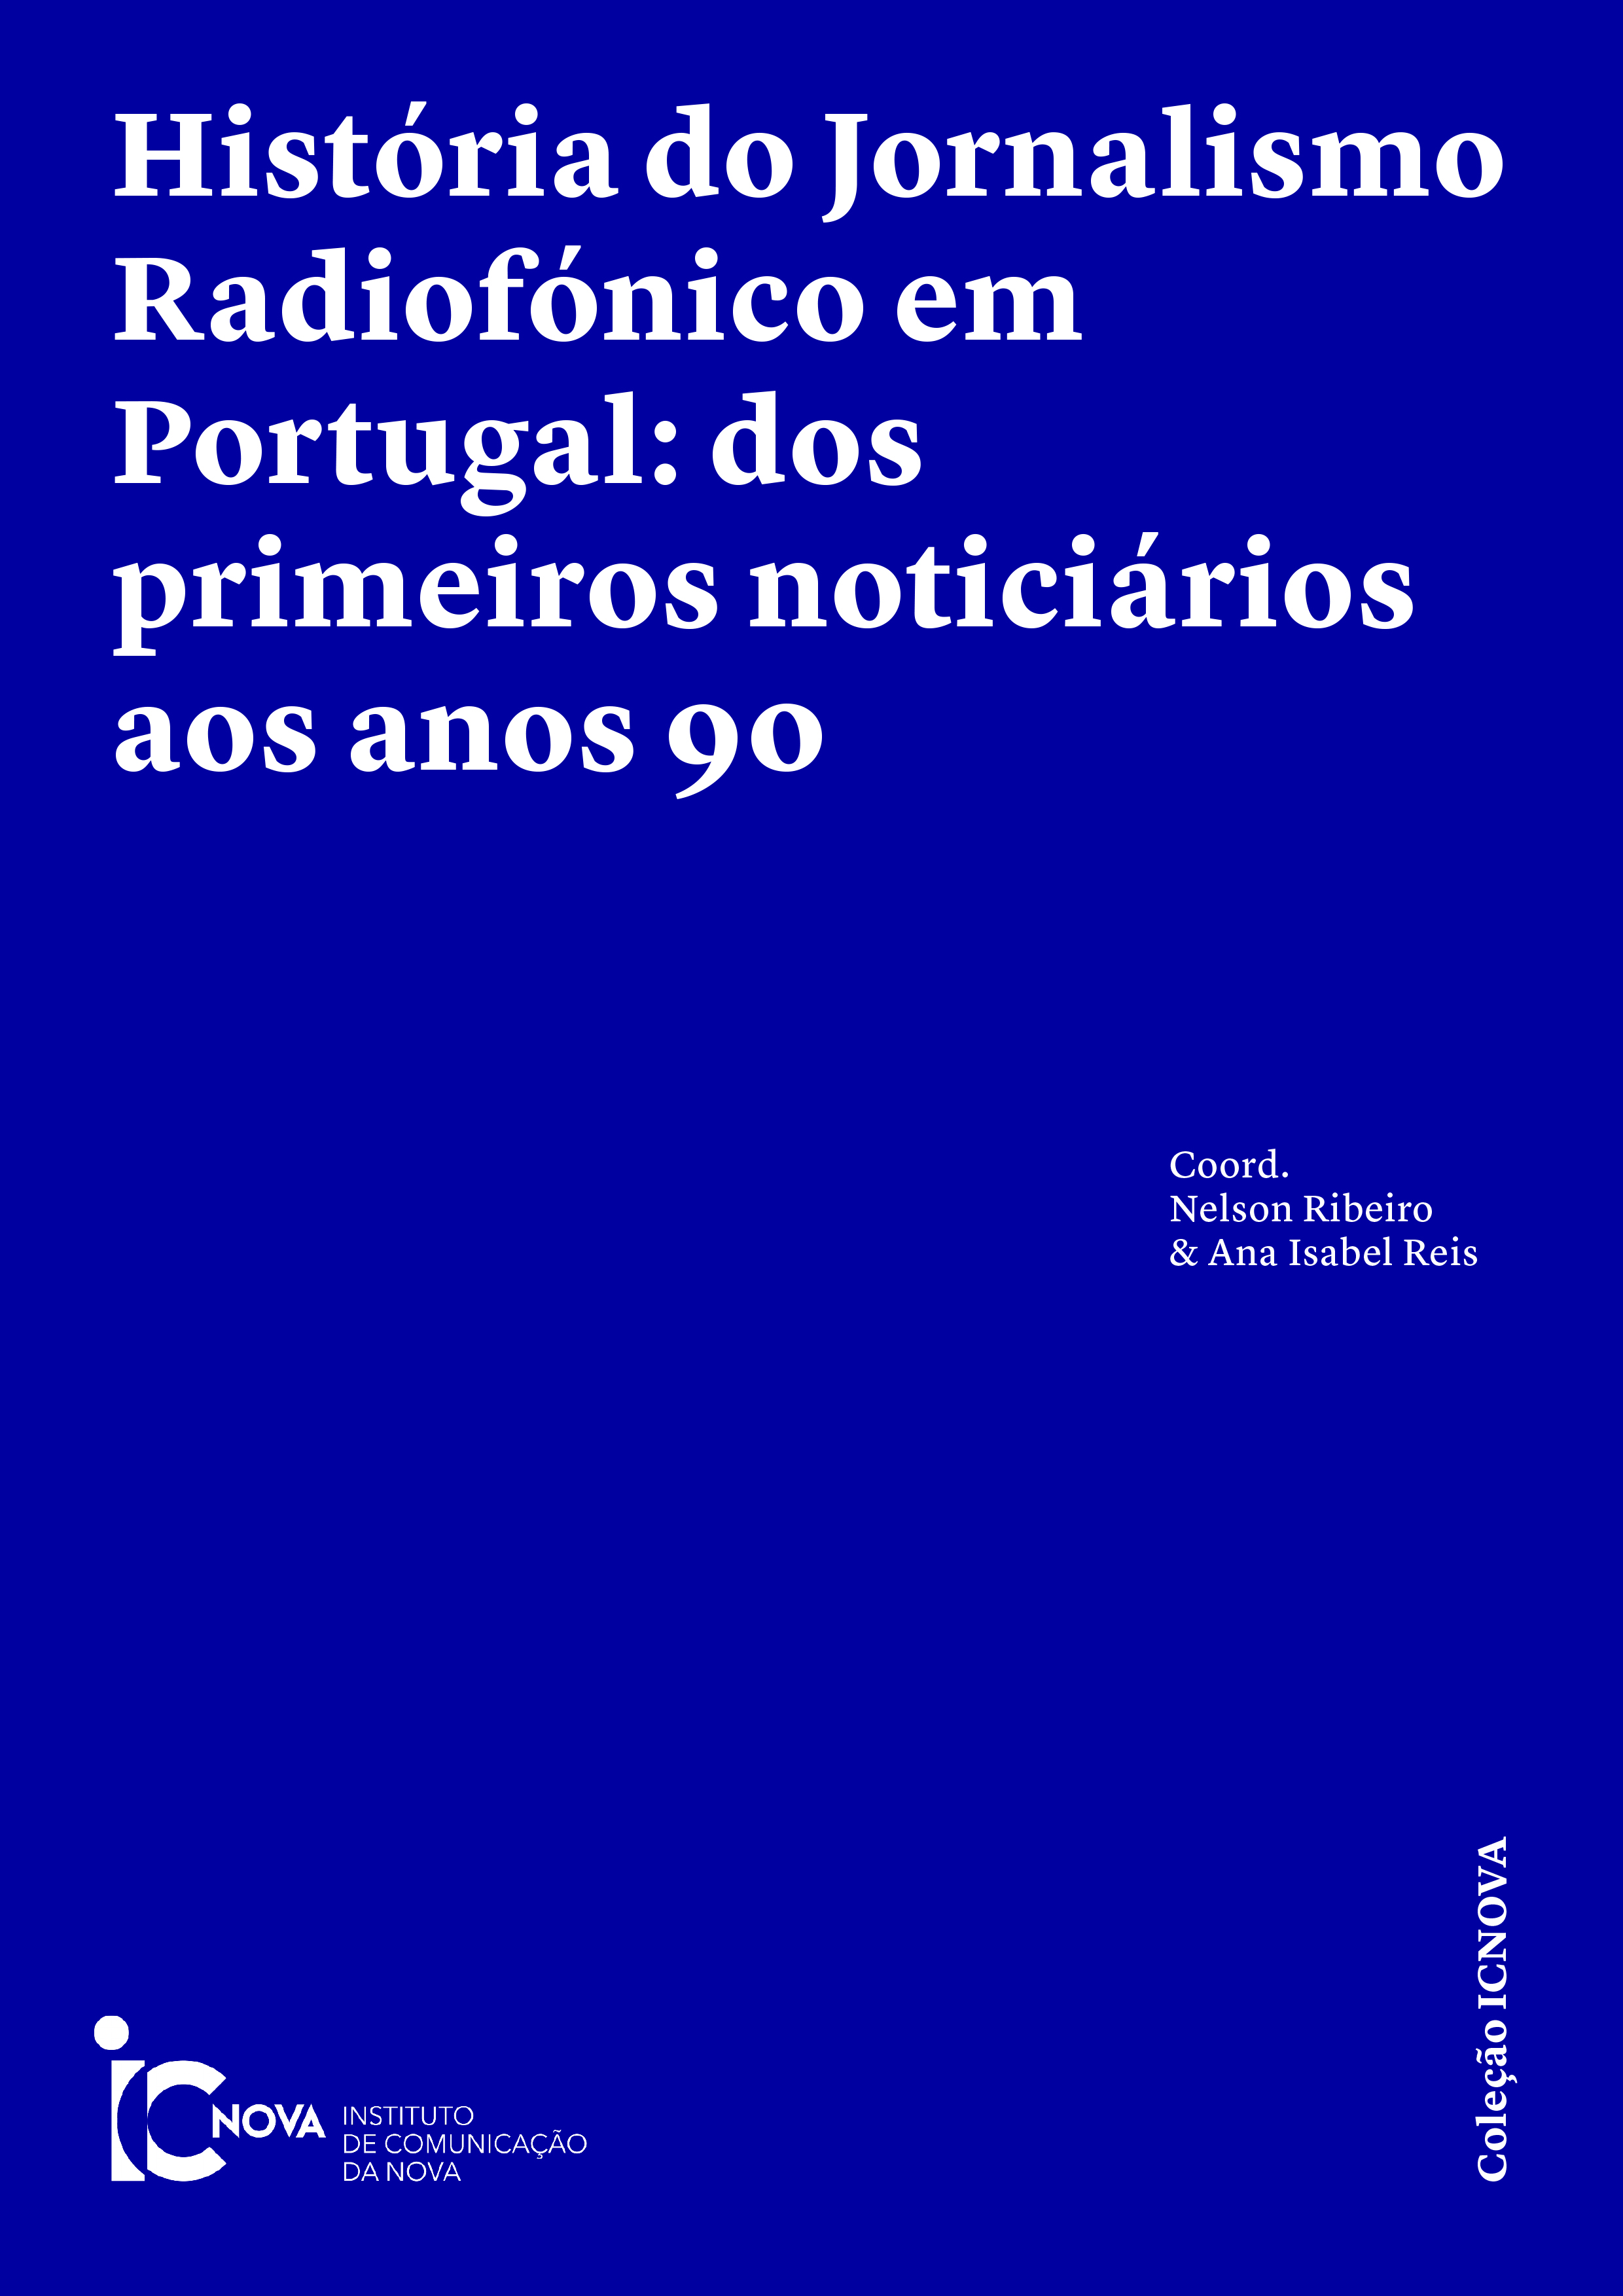 					Ver 2022: História do Jornalismo Radiofónico em Portugal: dos primeiros noticiários aos anos 90
				